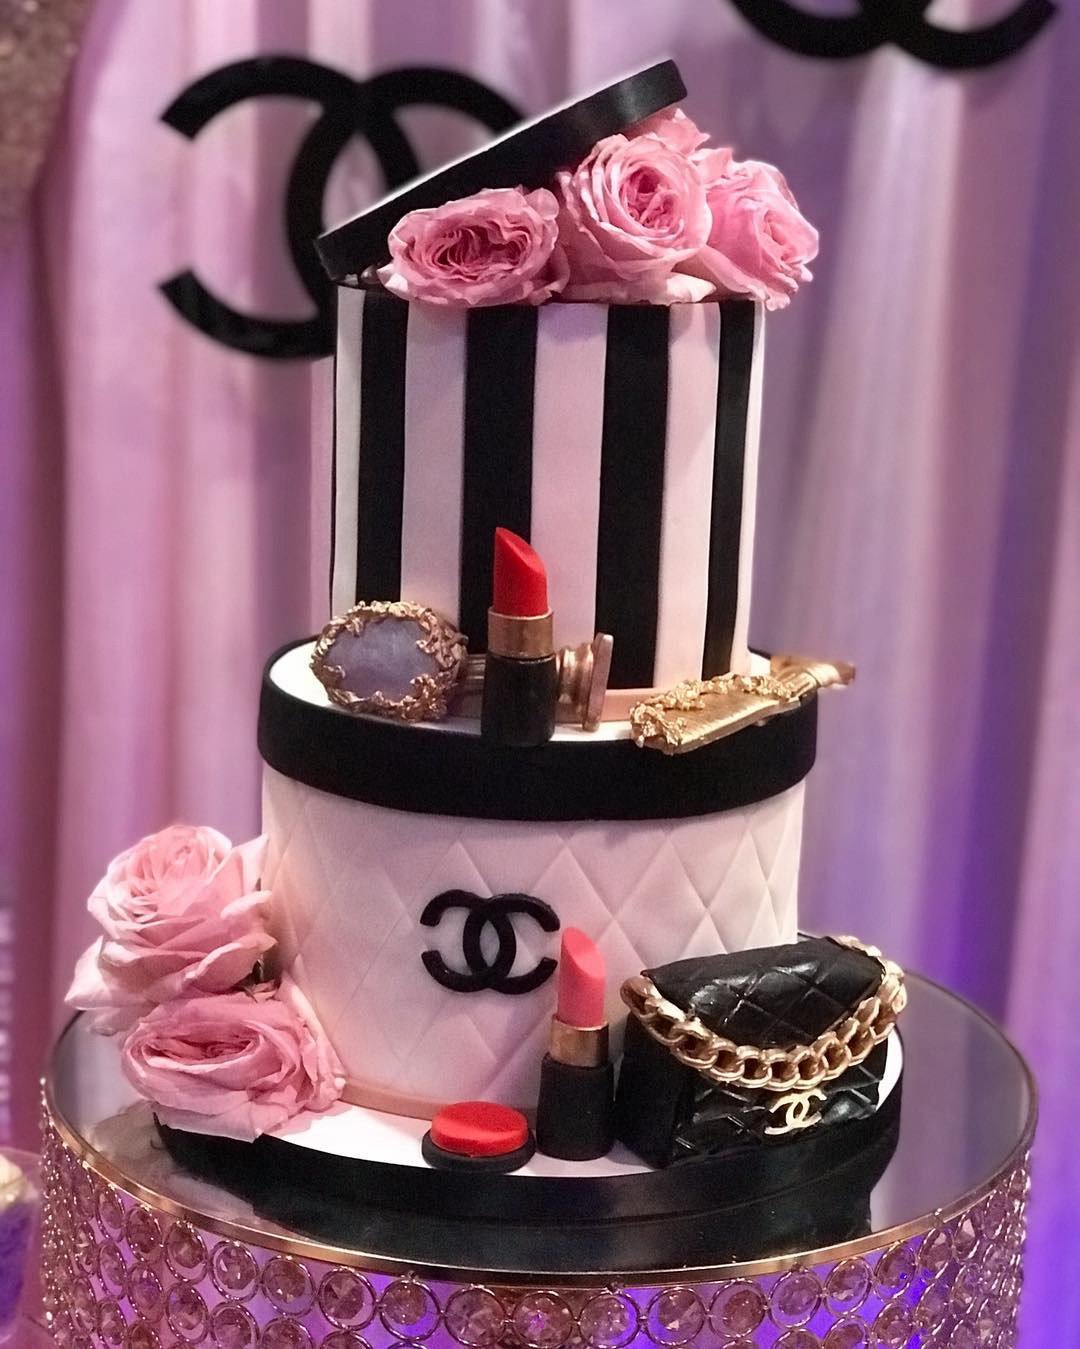 Chanel Handbag Cake for Rebekahs 30th  all edible   CakesDecor